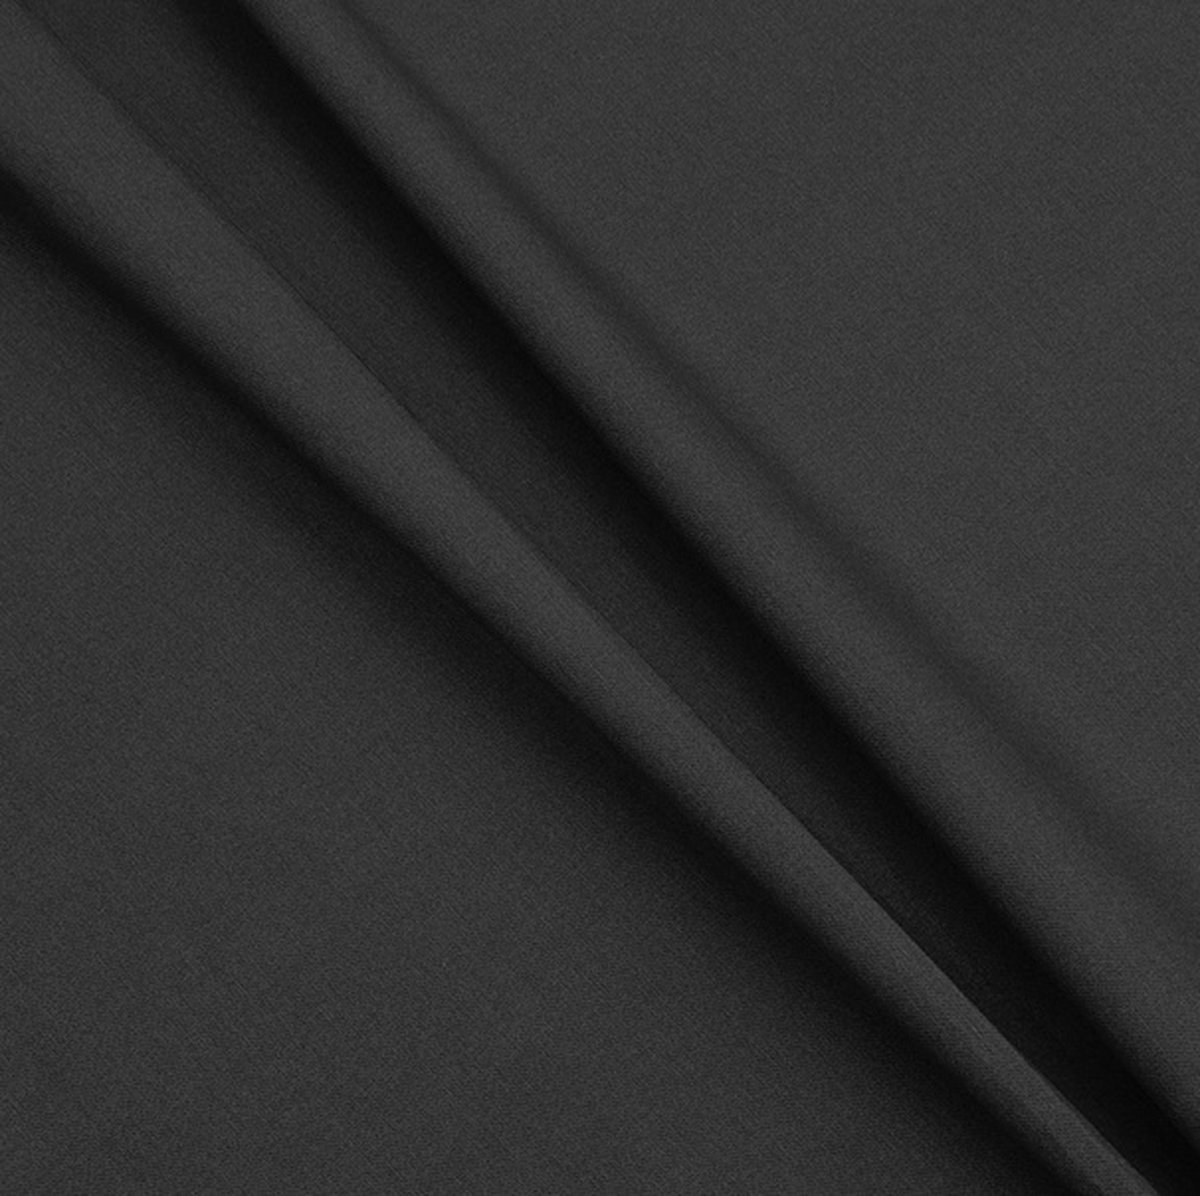 Gecoat tafelkleed/tafellinnen - Afwasbaar - Op koker geleverd - kleur: effen zwart - 200x140 cm